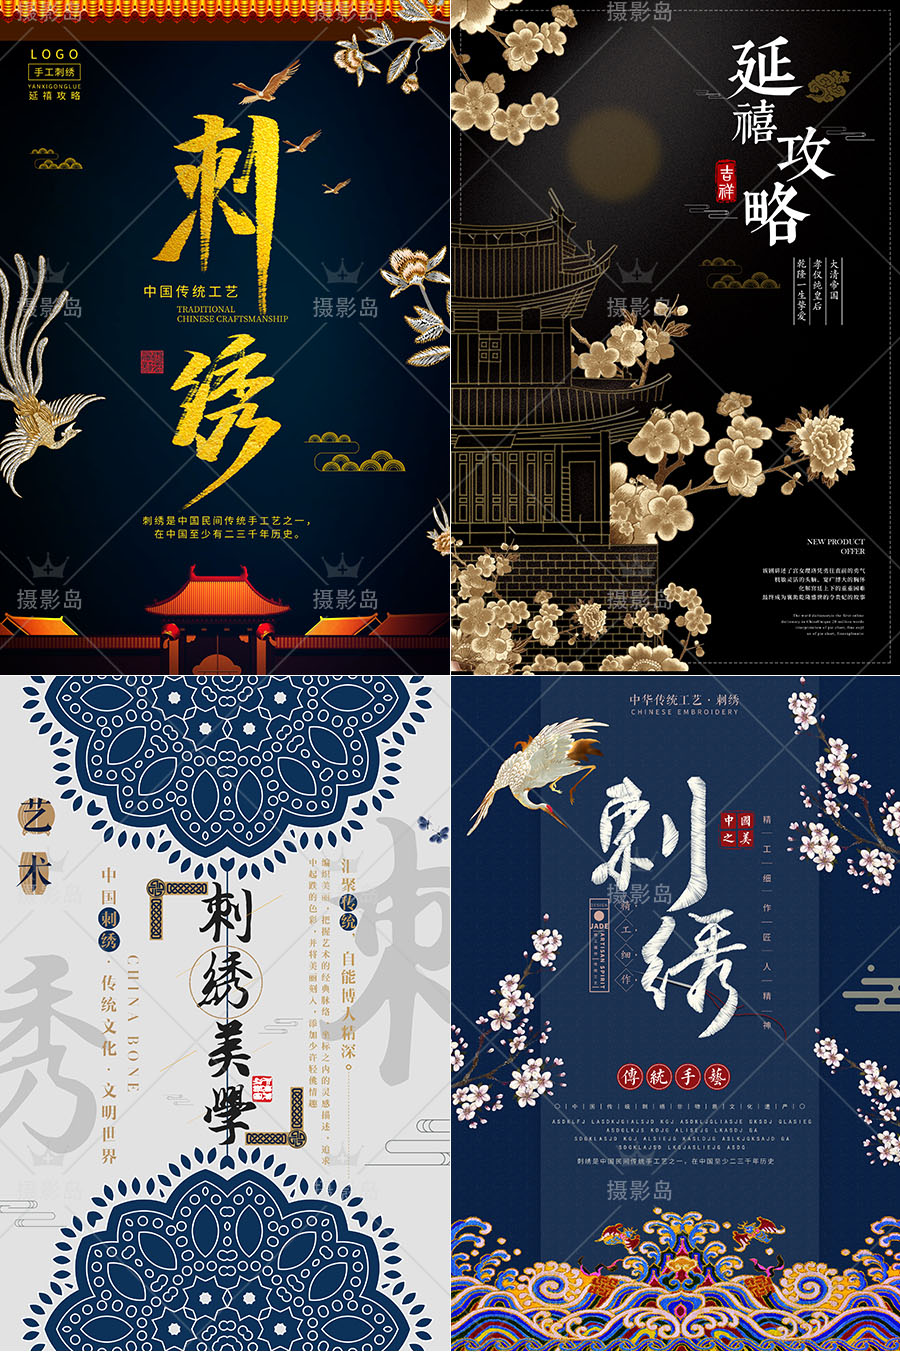 中国风清朝古装刺绣、宫廷戏延禧攻略海报DM宣传单，古风设计素材PS模版